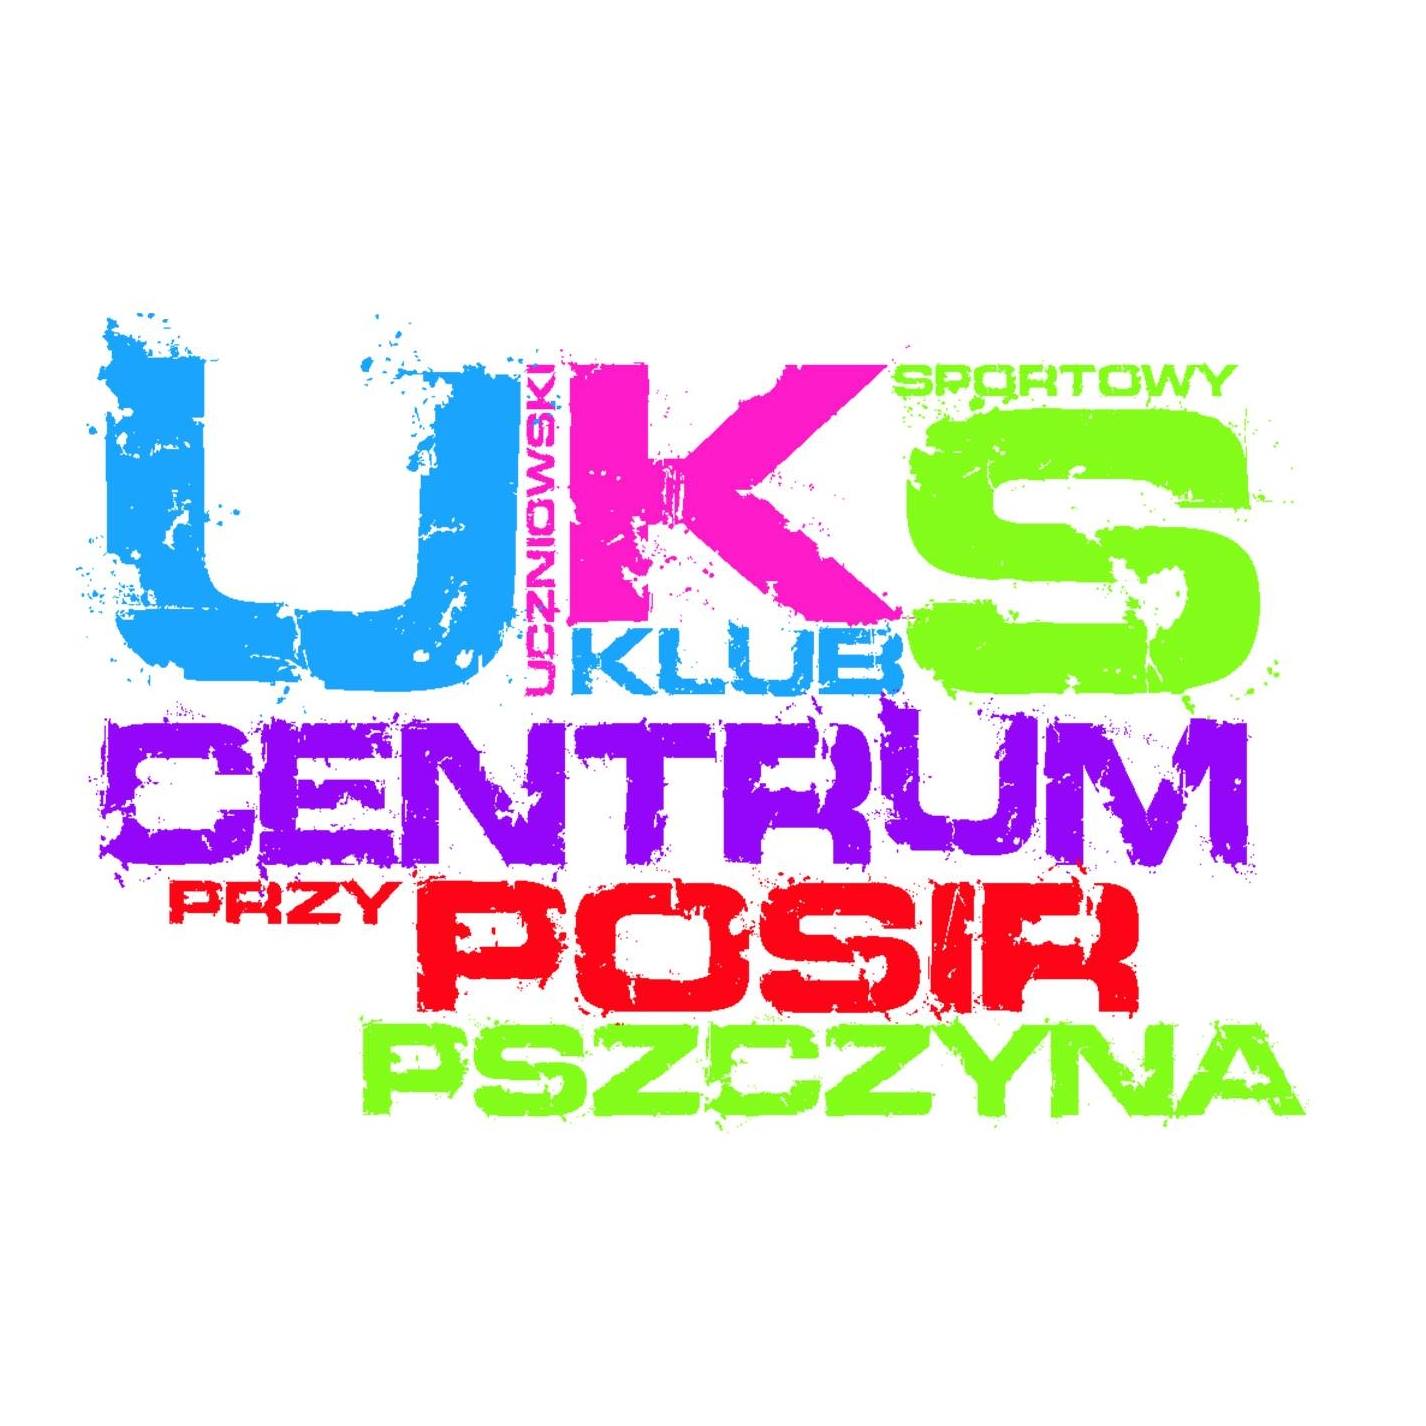 UKS Centrum Pszczyna Logo